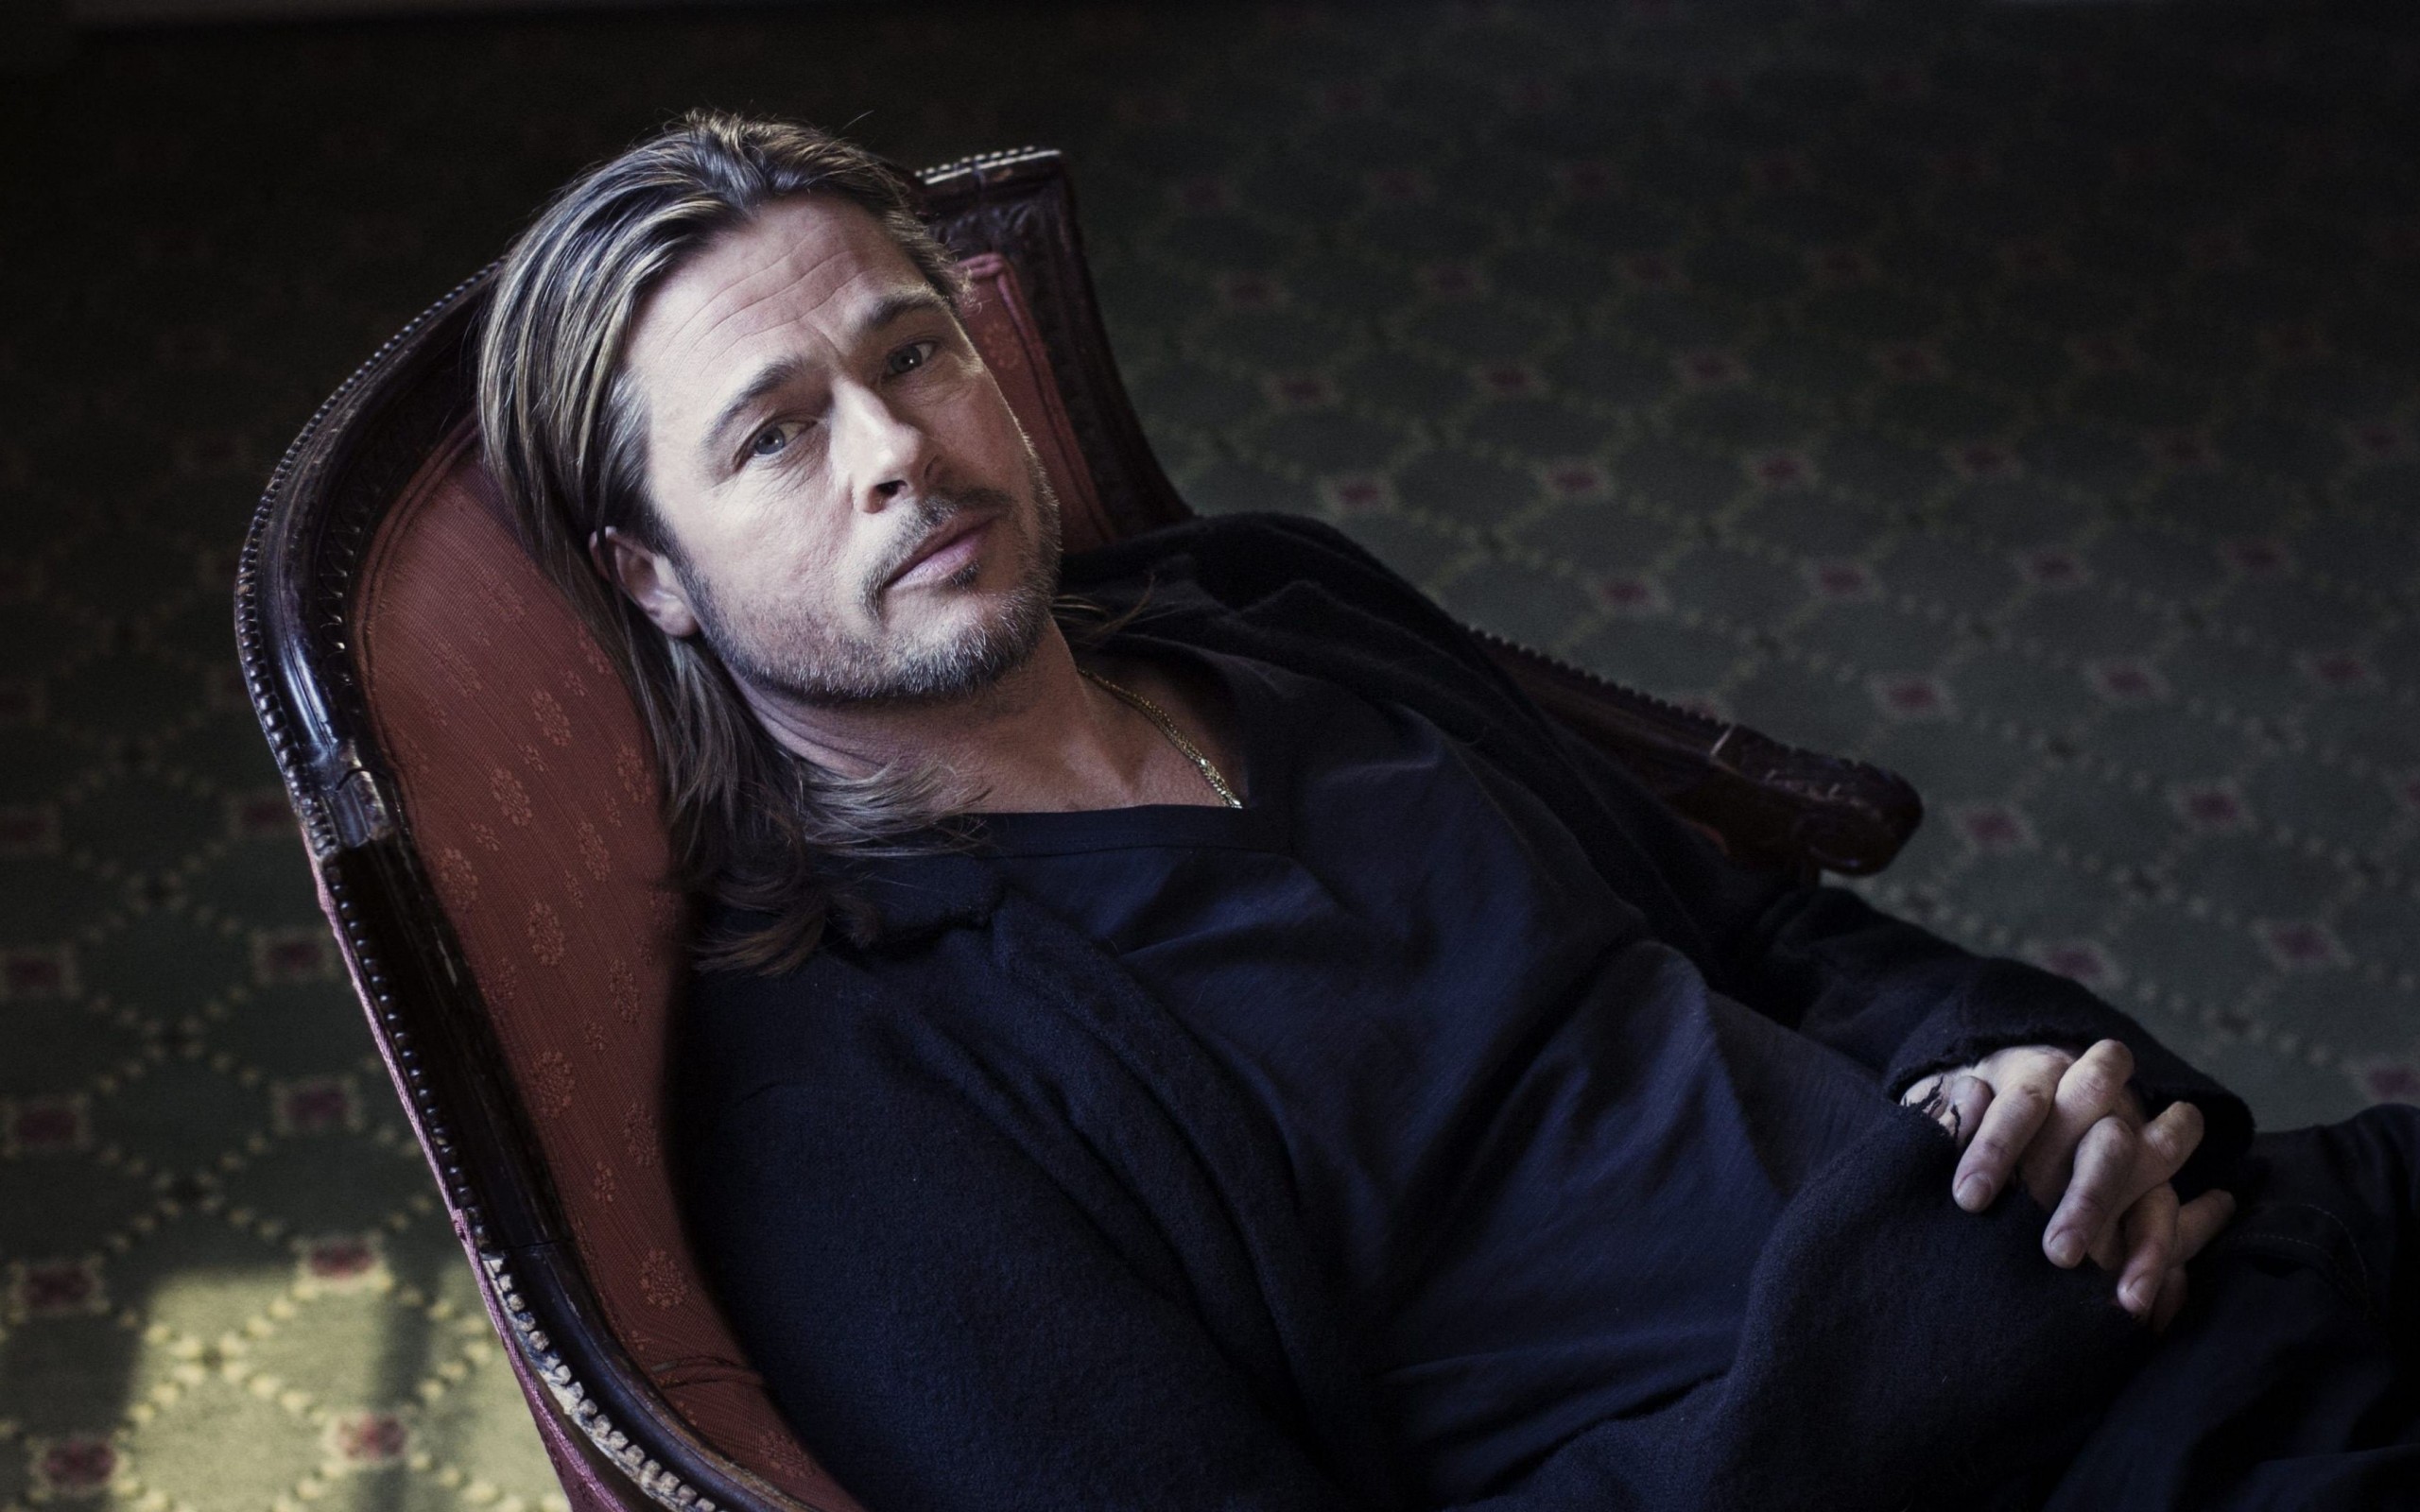 Brad Pitt Sitting On Chair Wallpaper for Desktop 2560x1600